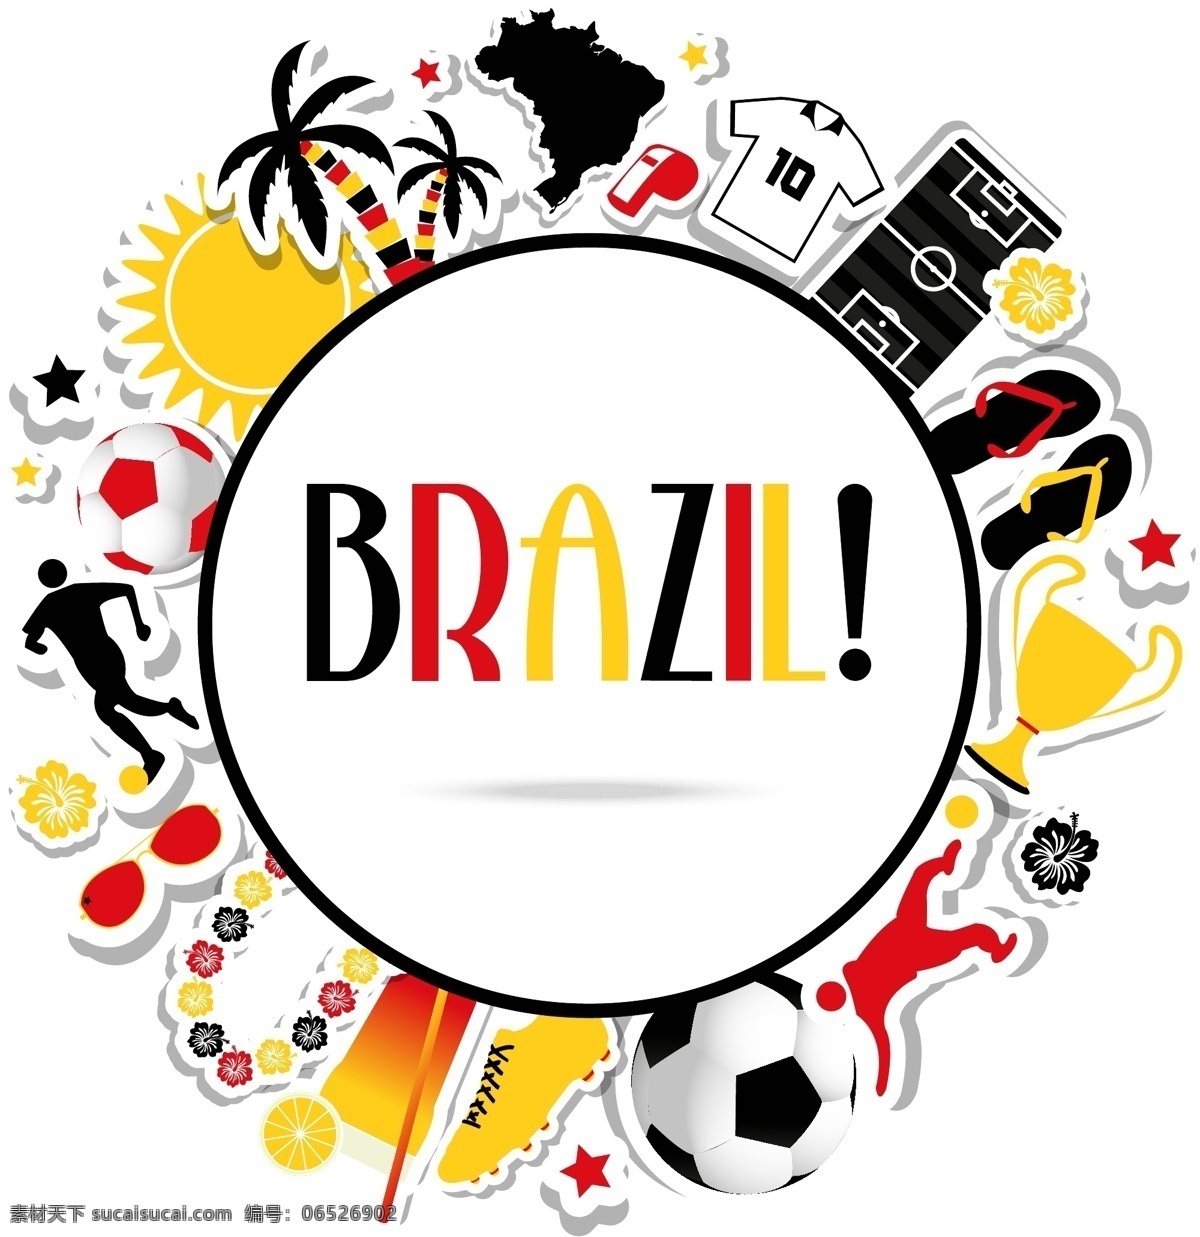 彩色 卡通 世界杯 背景 模板下载 椰子树 足球 足球鞋 体育运动 生活百科 矢量素材 白色